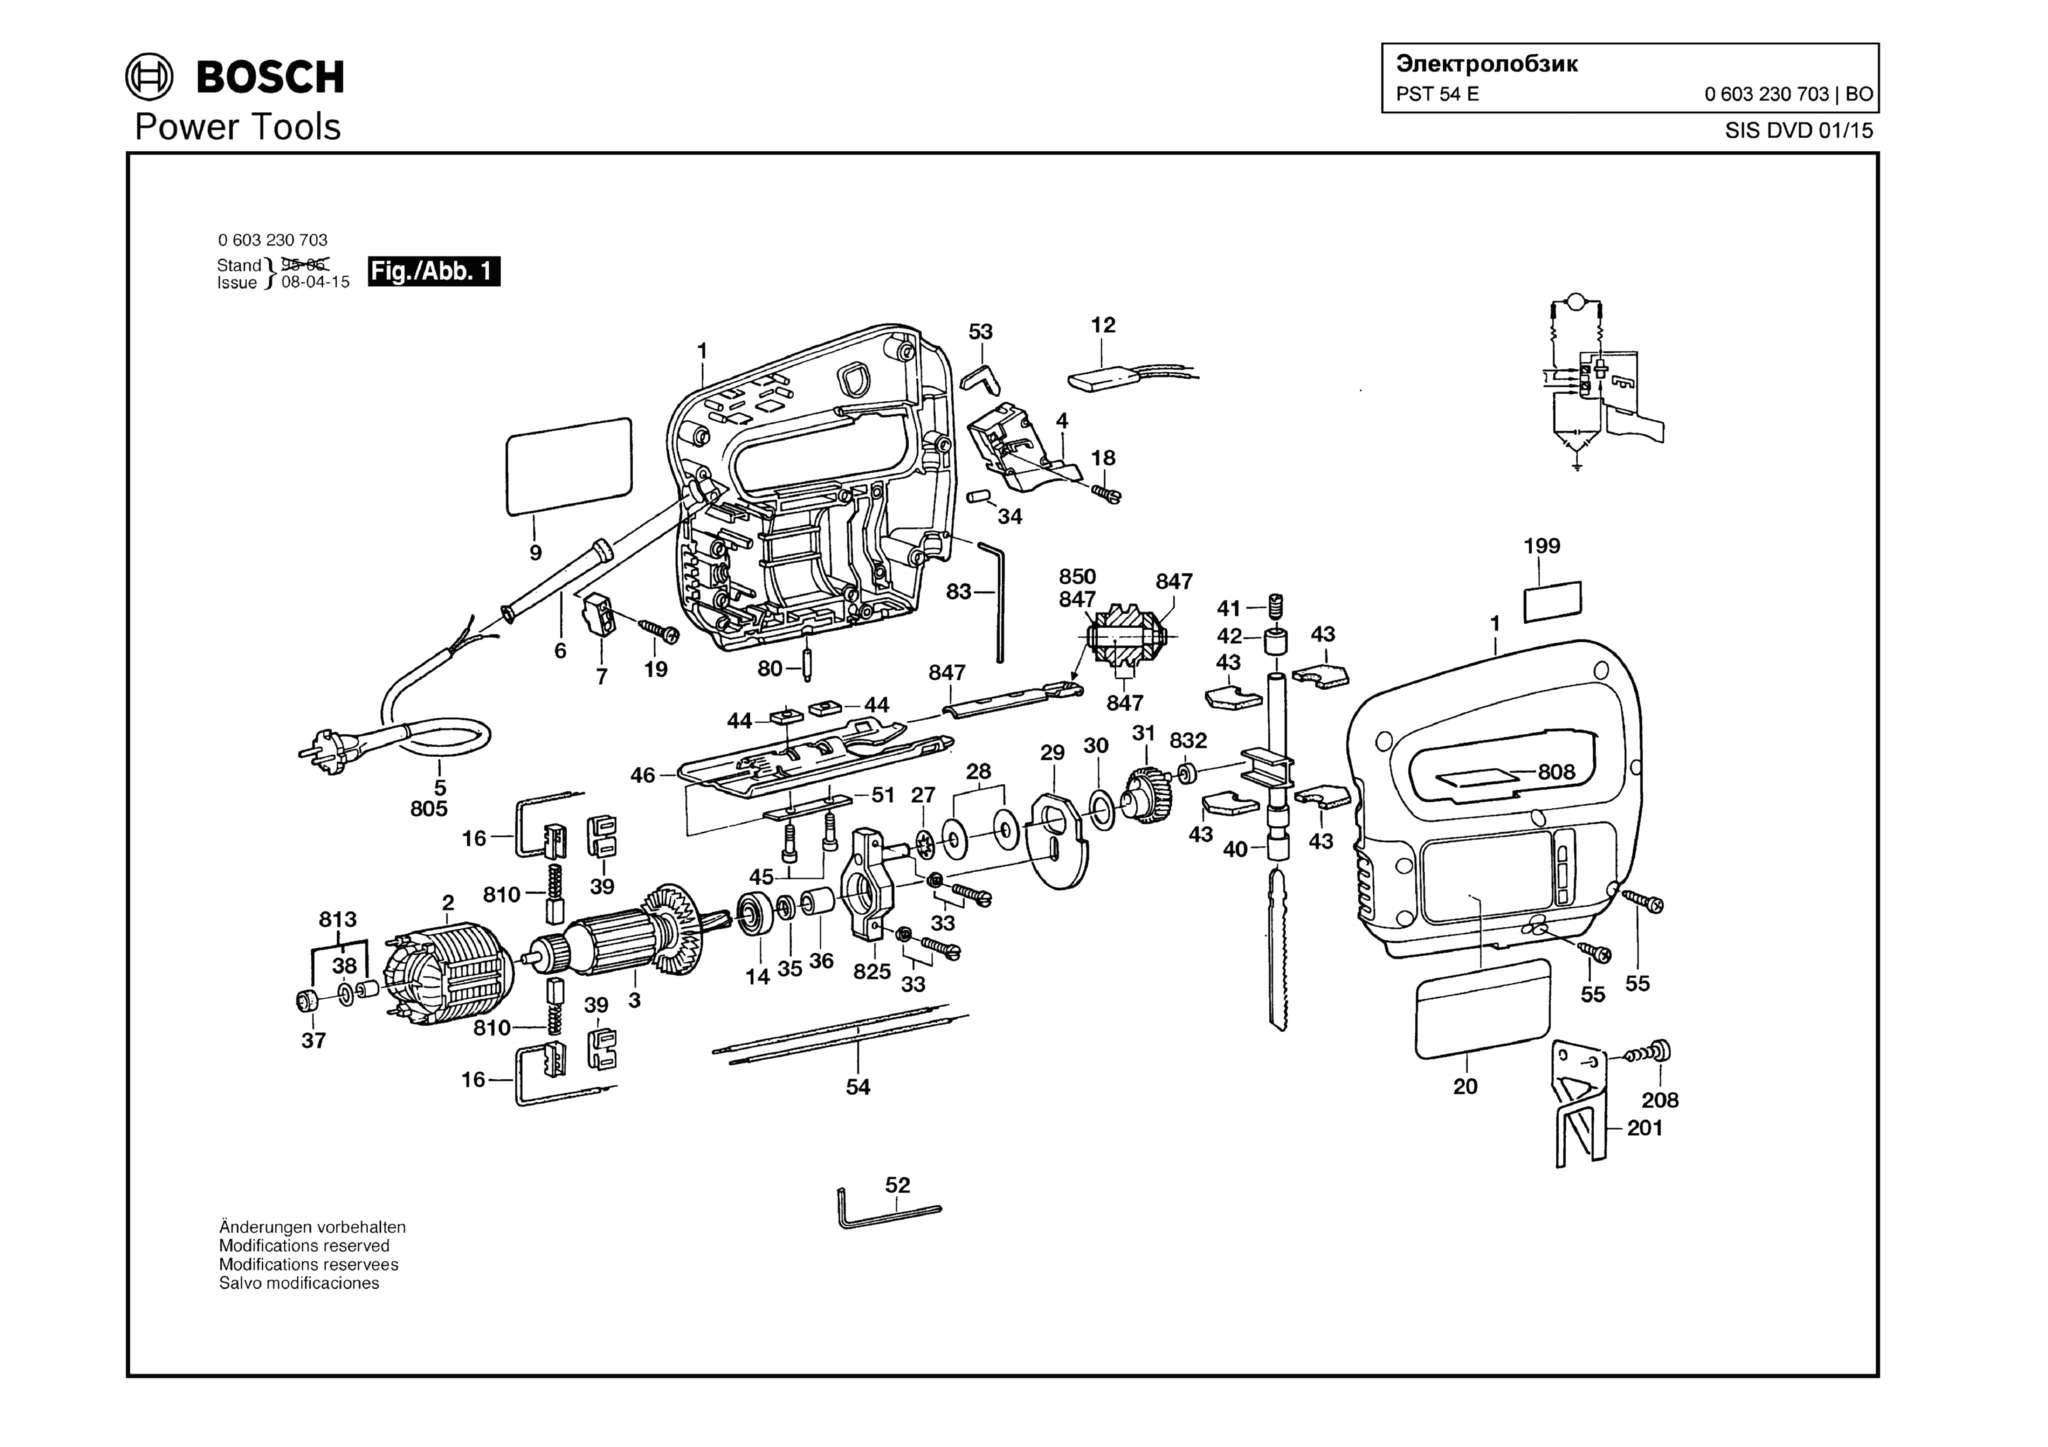 Запчасти, схема и деталировка Bosch PST 54 E (ТИП 0603230703)